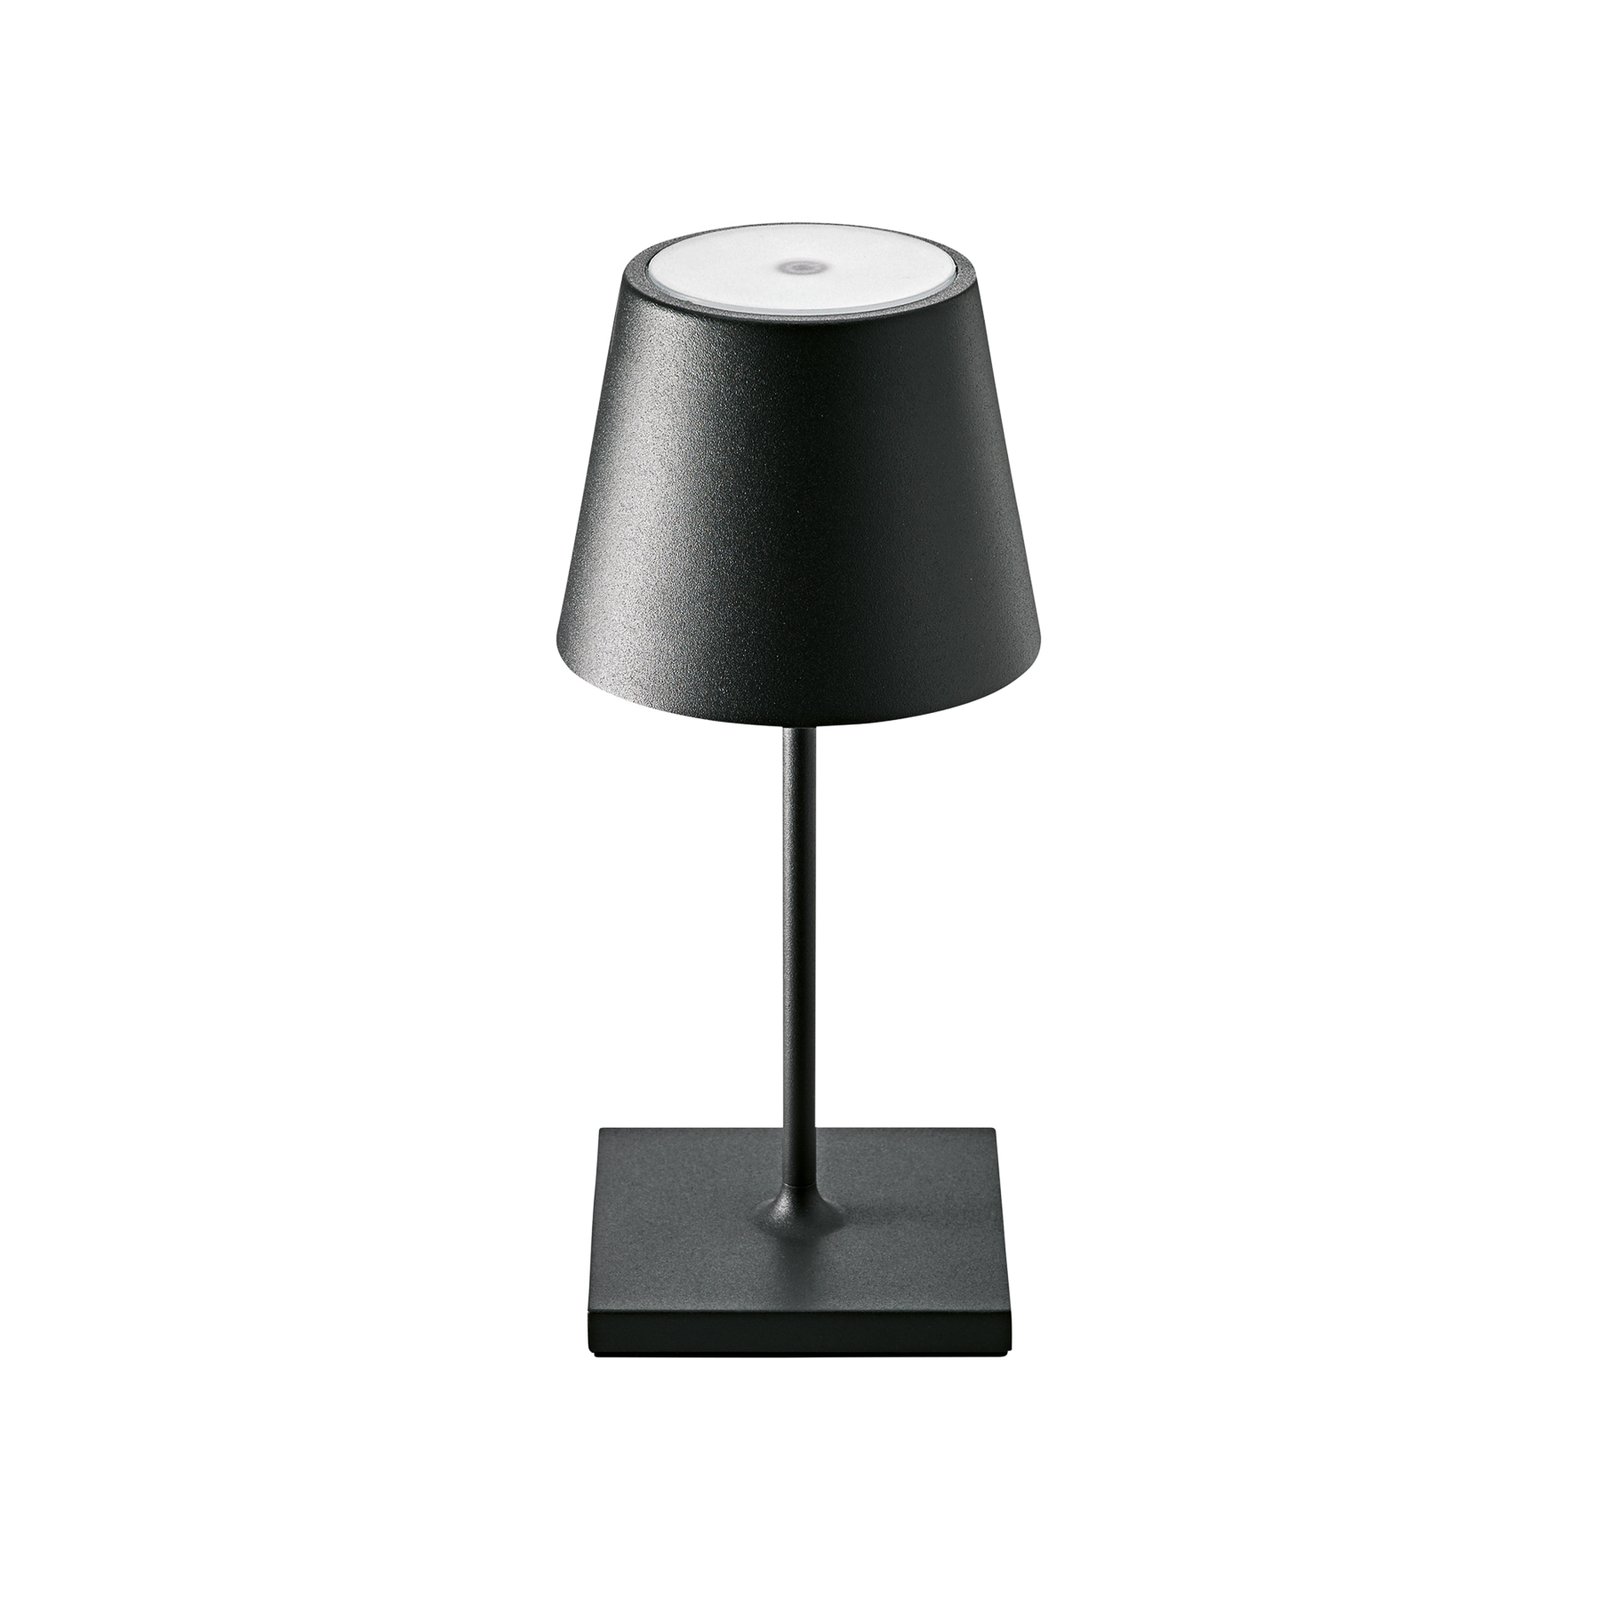 Nuindie mini LED dobíjacia stolná lampa, okrúhla, USB-C, polnočná čierna